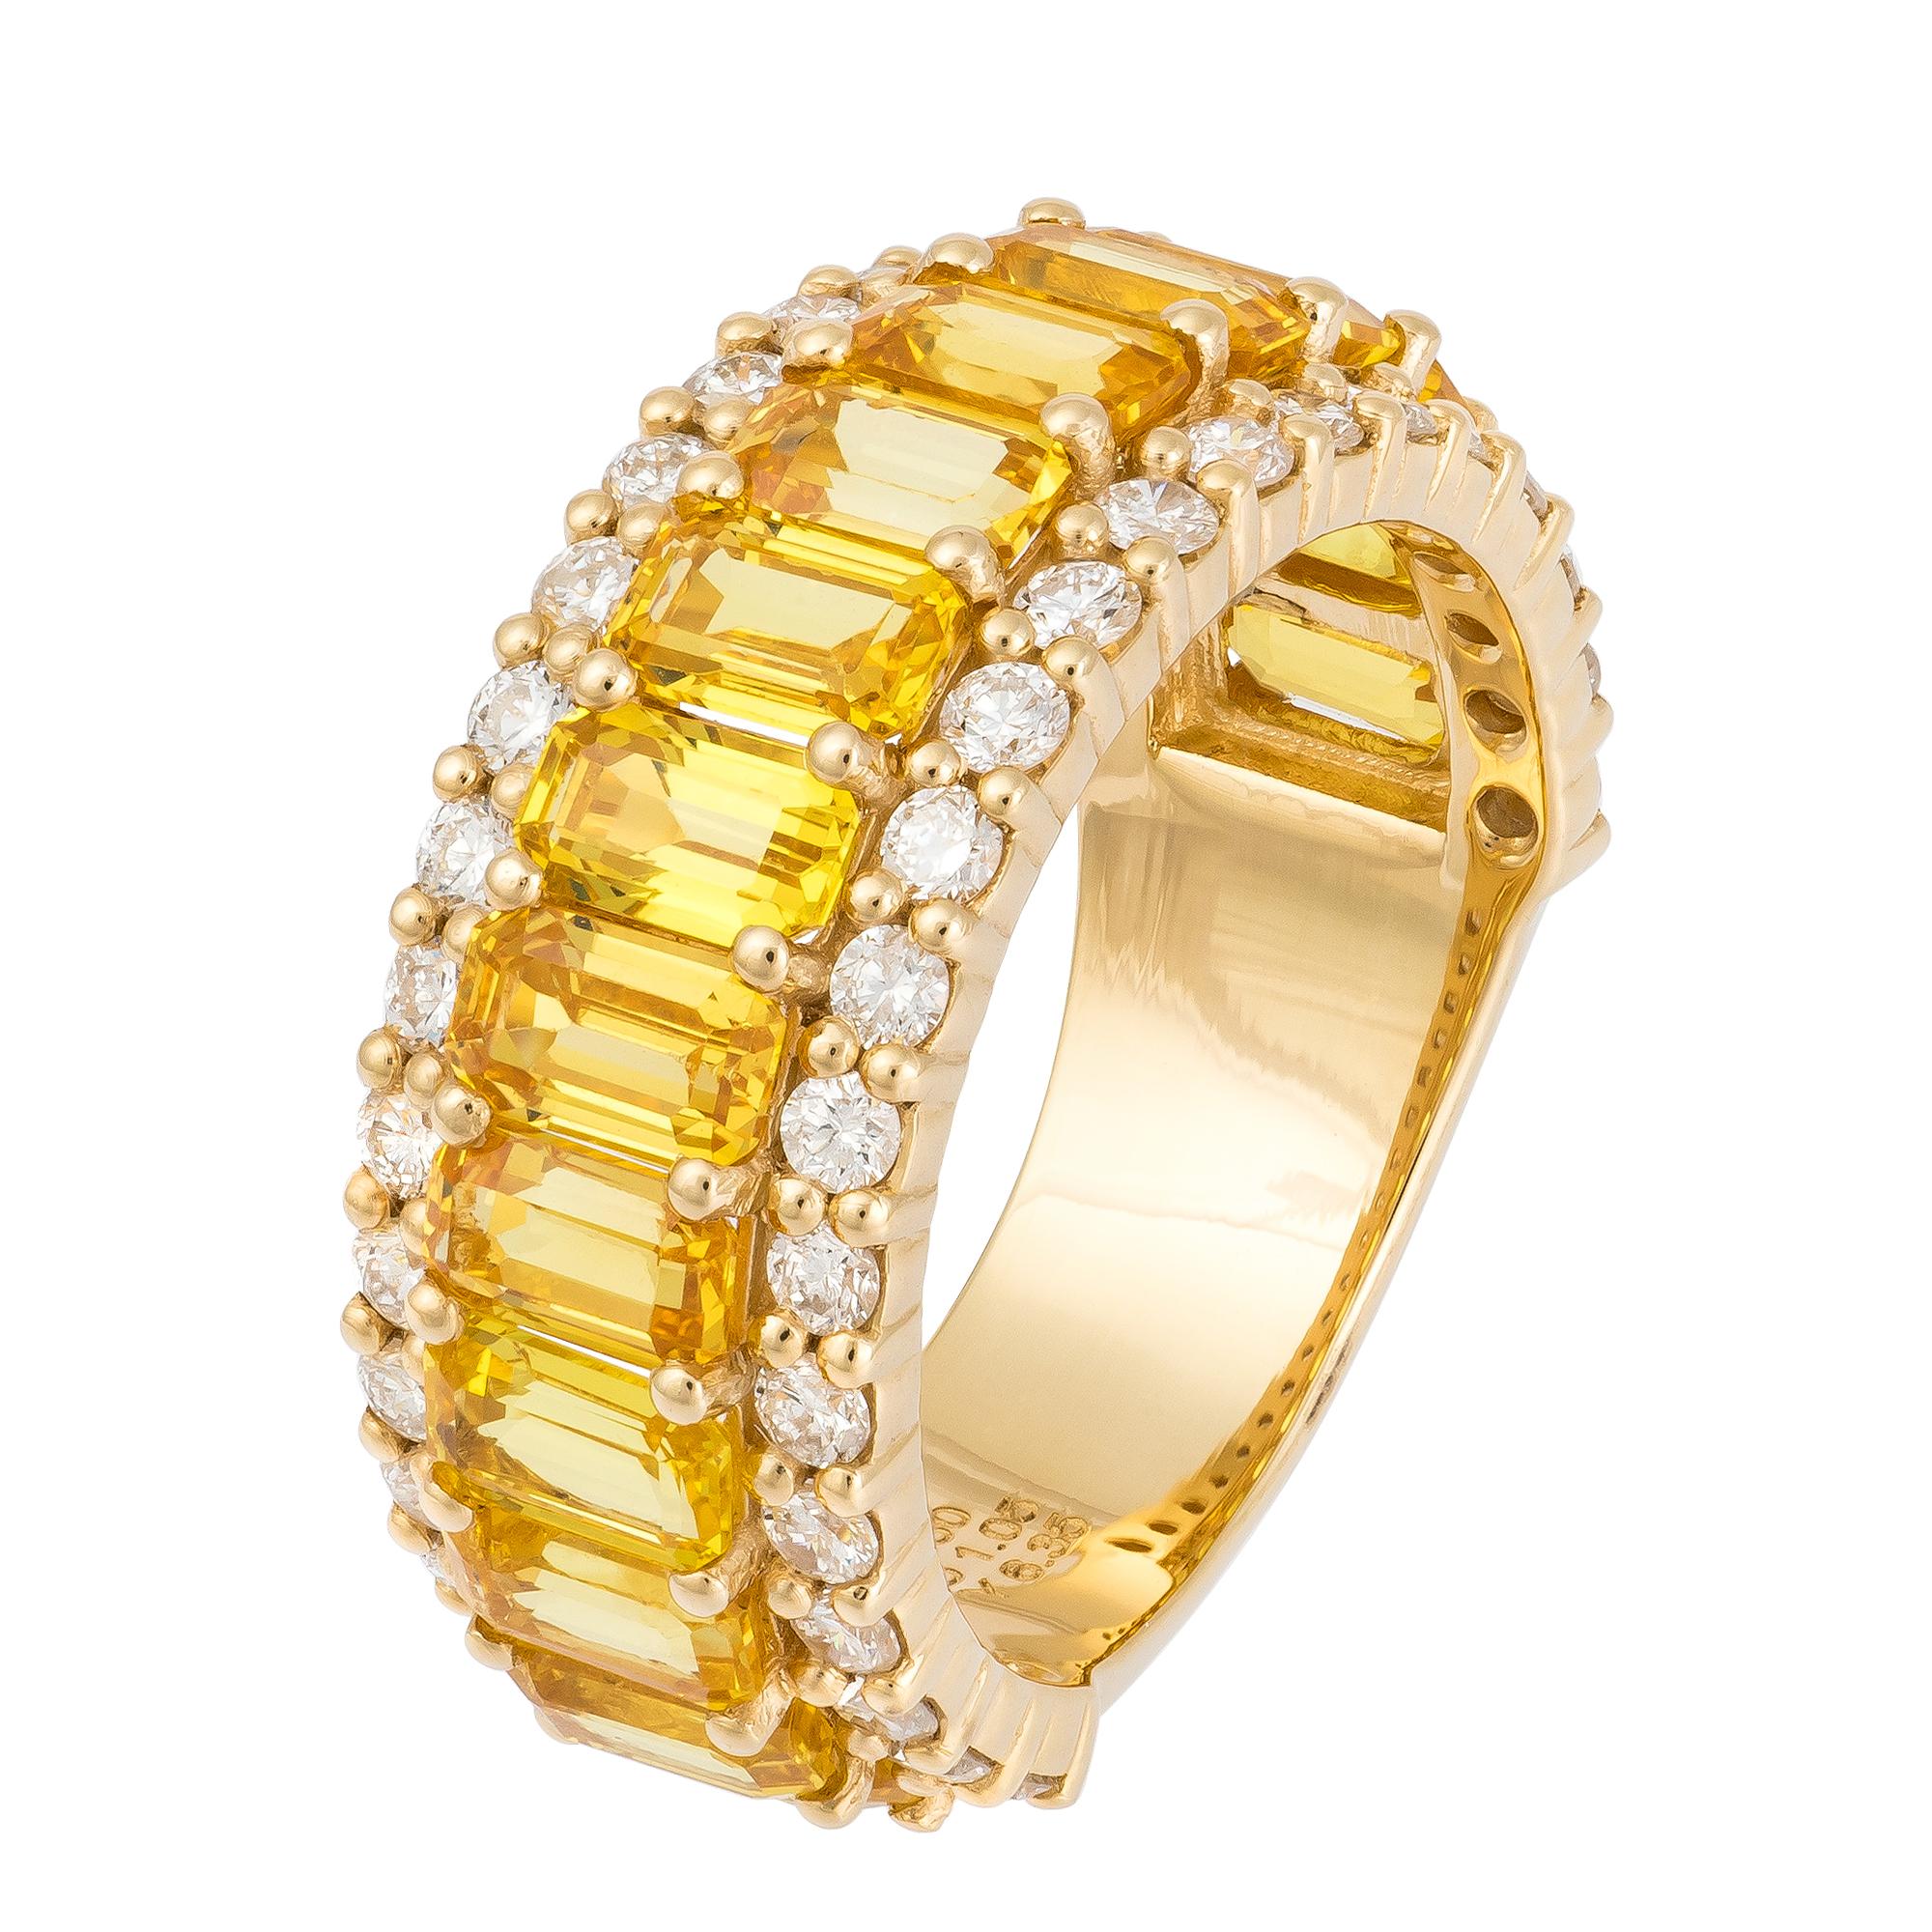 RING 18K Yellow Gold Diamond 1.00 Cts/42 Pcs Yellow Sapphire 4.85 Cts/15 Pcs